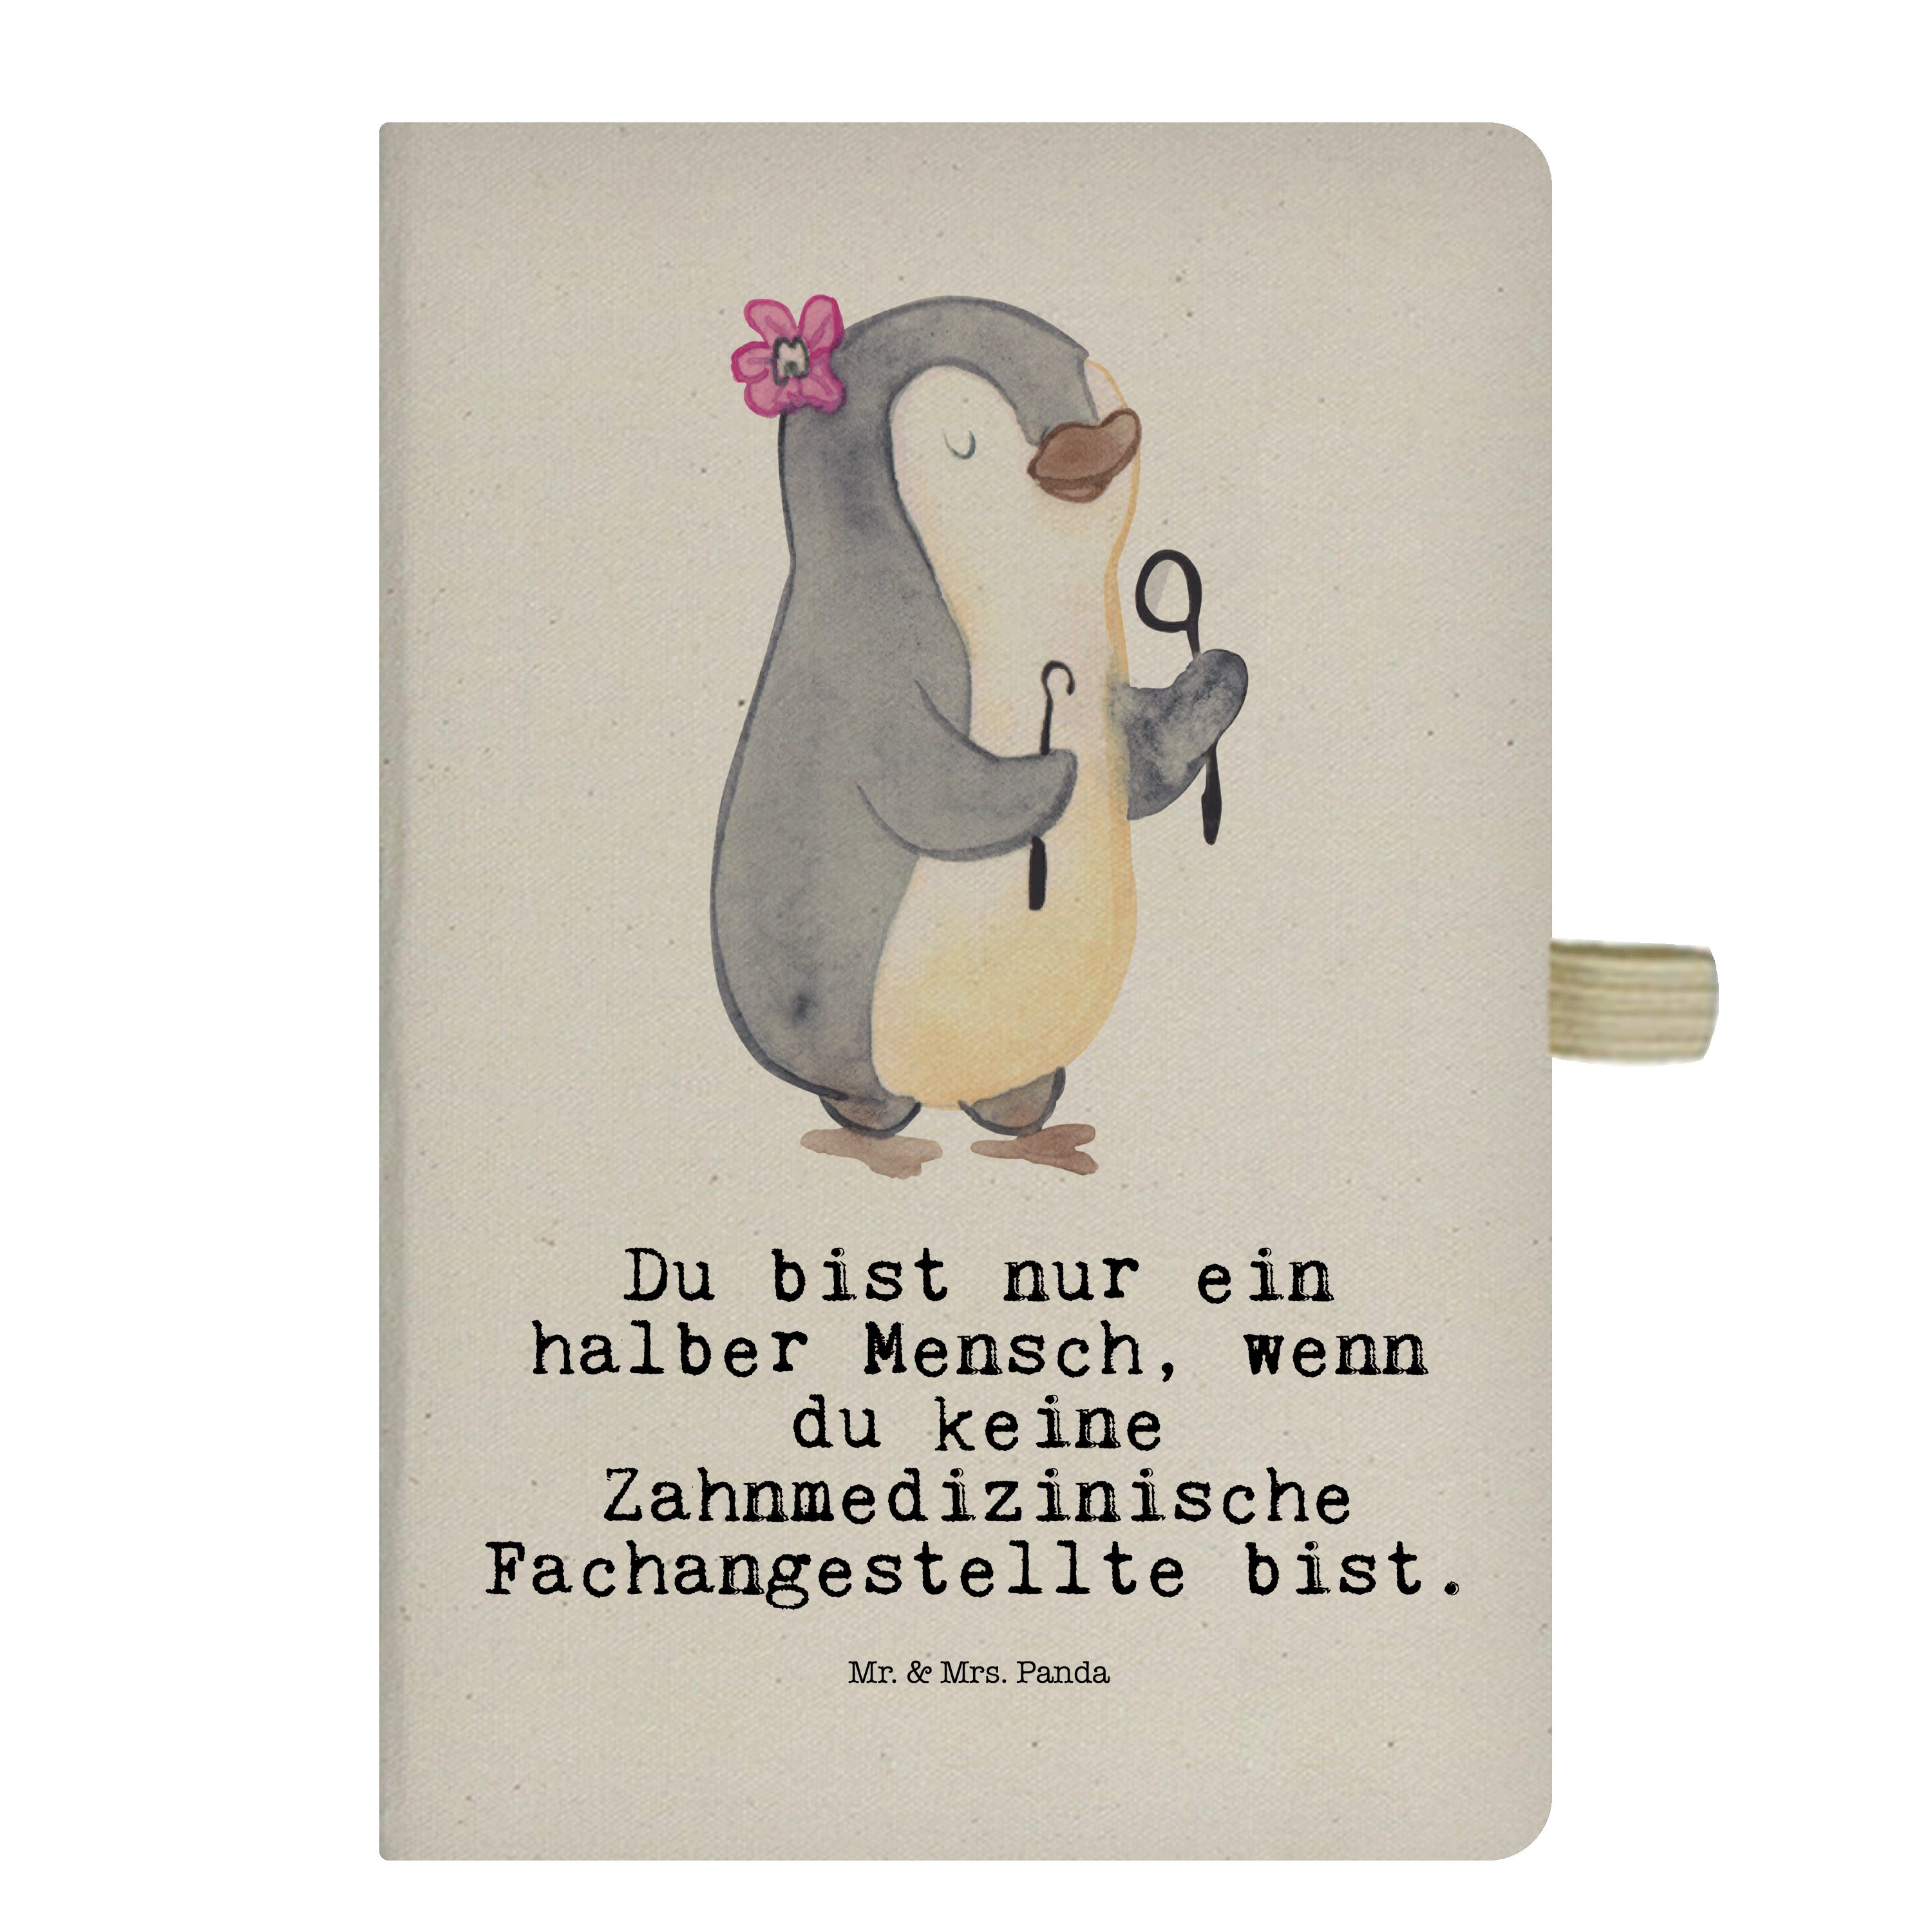 Mr. & Mrs. Panda Notizbuch Zahnmedizinische Fachangestellte mit Herz - Transparent - Geschenk, N Mr. & Mrs. Panda